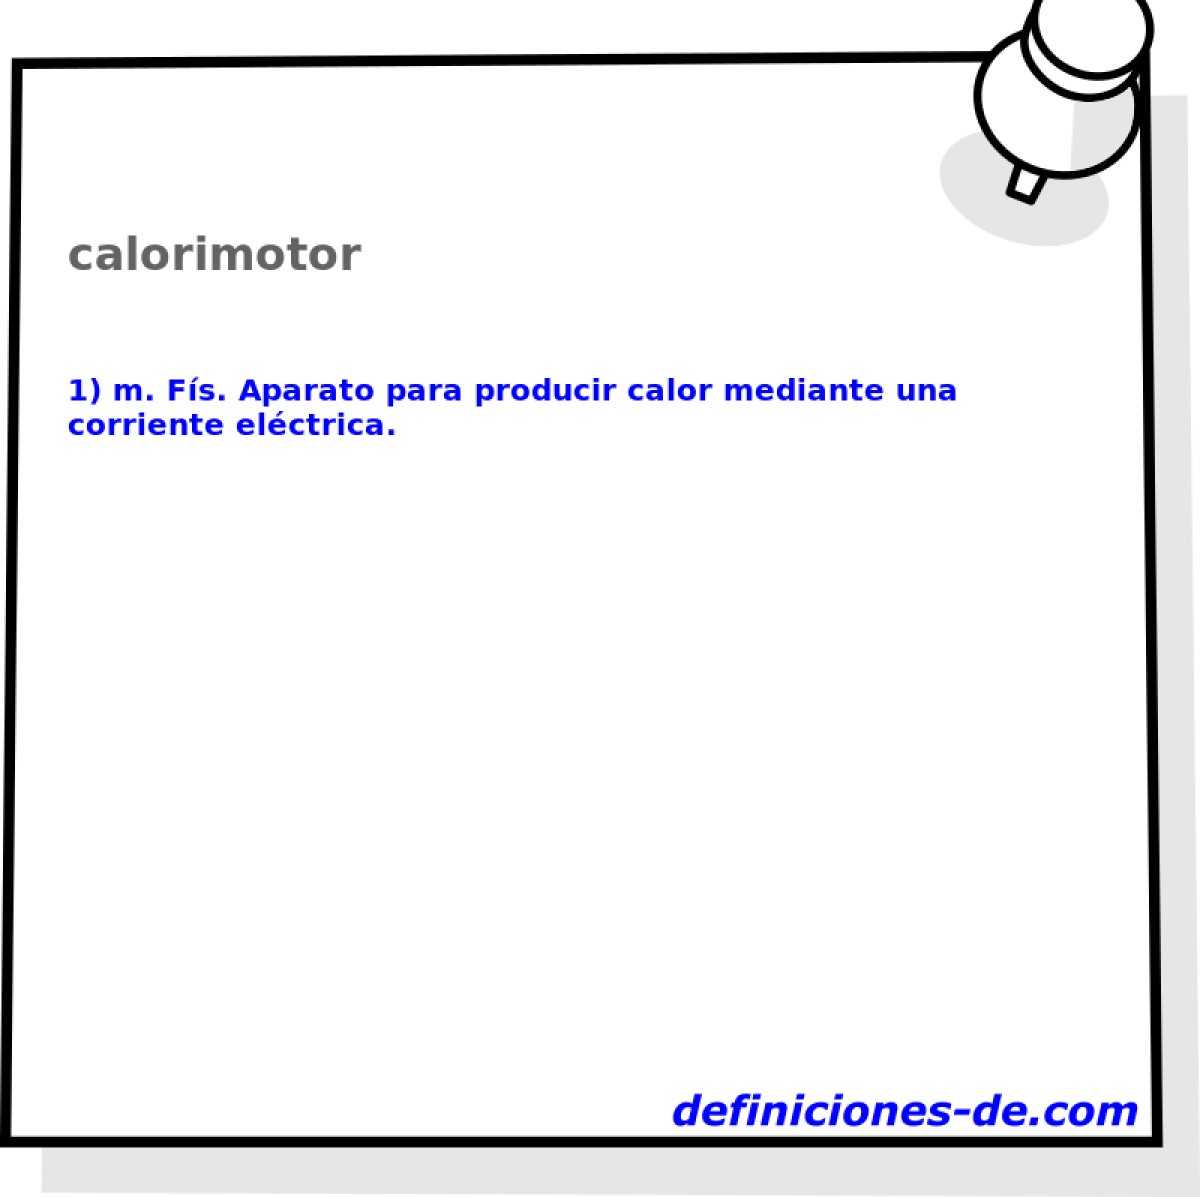 calorimotor 